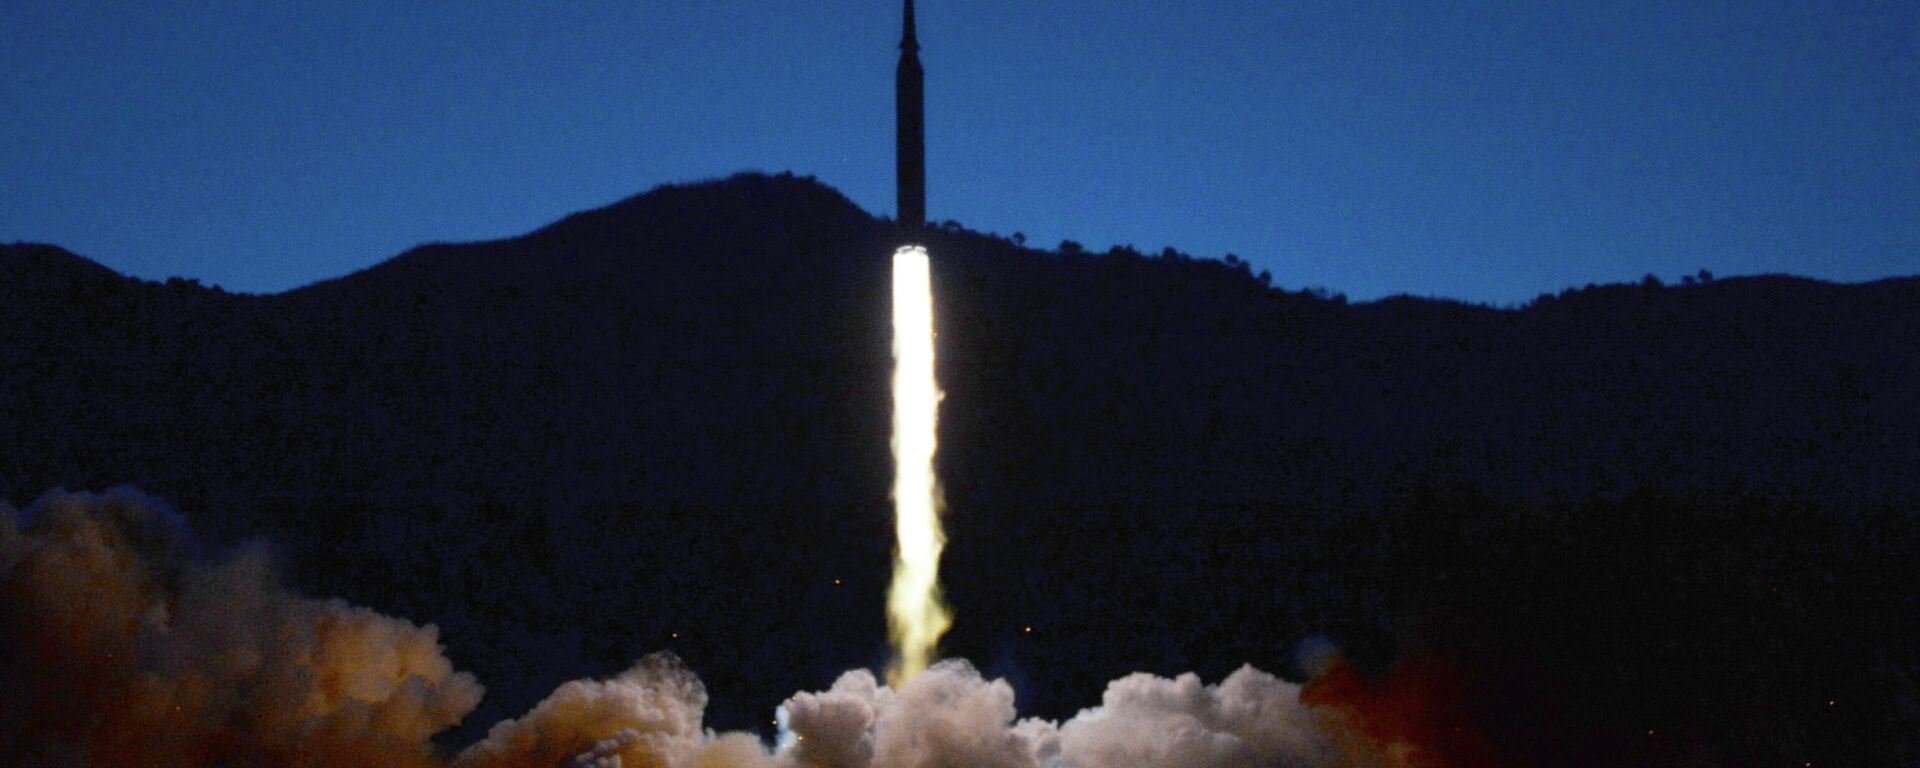 Kuzey Kore'nin, 1000 kilometre mesafedeki hedefi başarıyla vuran hipersonik füze denediği bildirildi. - Sputnik Türkiye, 1920, 12.01.2022